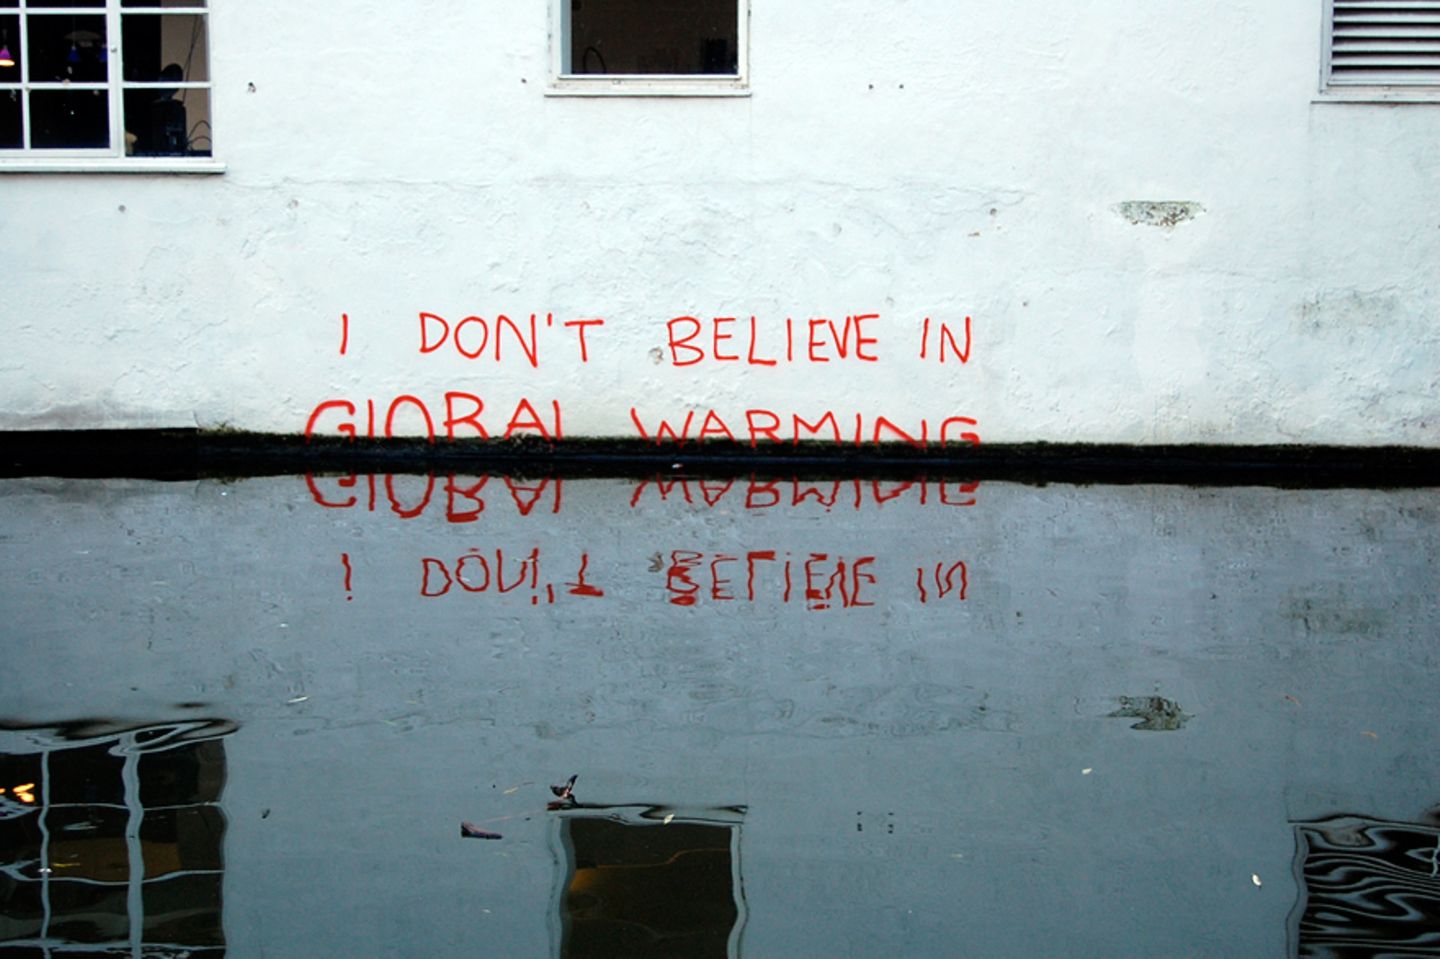 "Ich glaube nicht an die globale Erwärmung": Dieses ironische Graffiti wird dem Street-Art-Künstler Banksy zugeschrieben      Copyright Foto: Magnus D / Flickr / CC BY 2.0